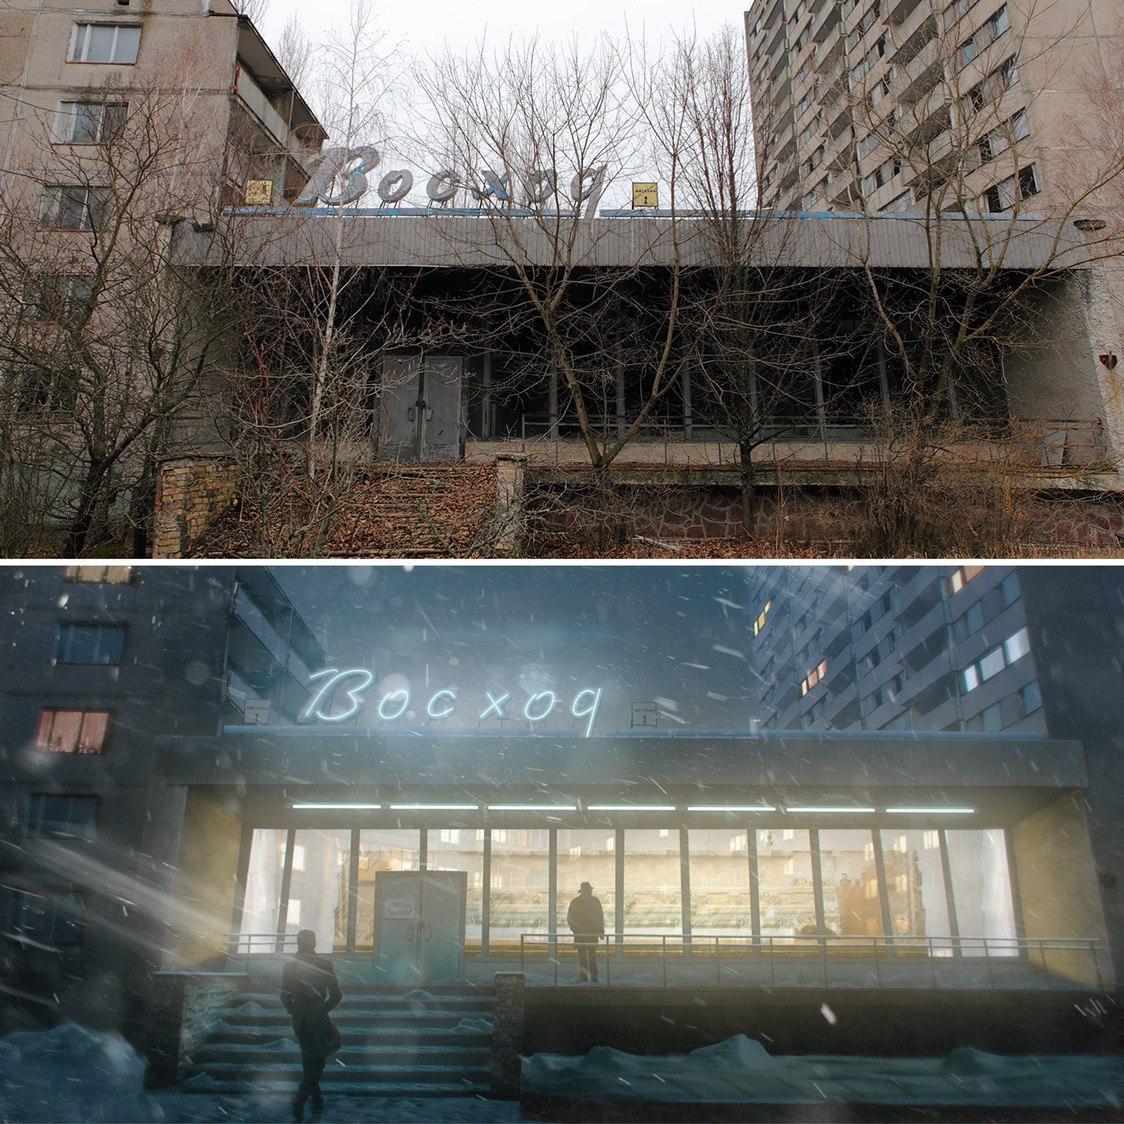 Как могла выглядеть Чернобыльская зона и Припять, если бы не взрыв: появились фото